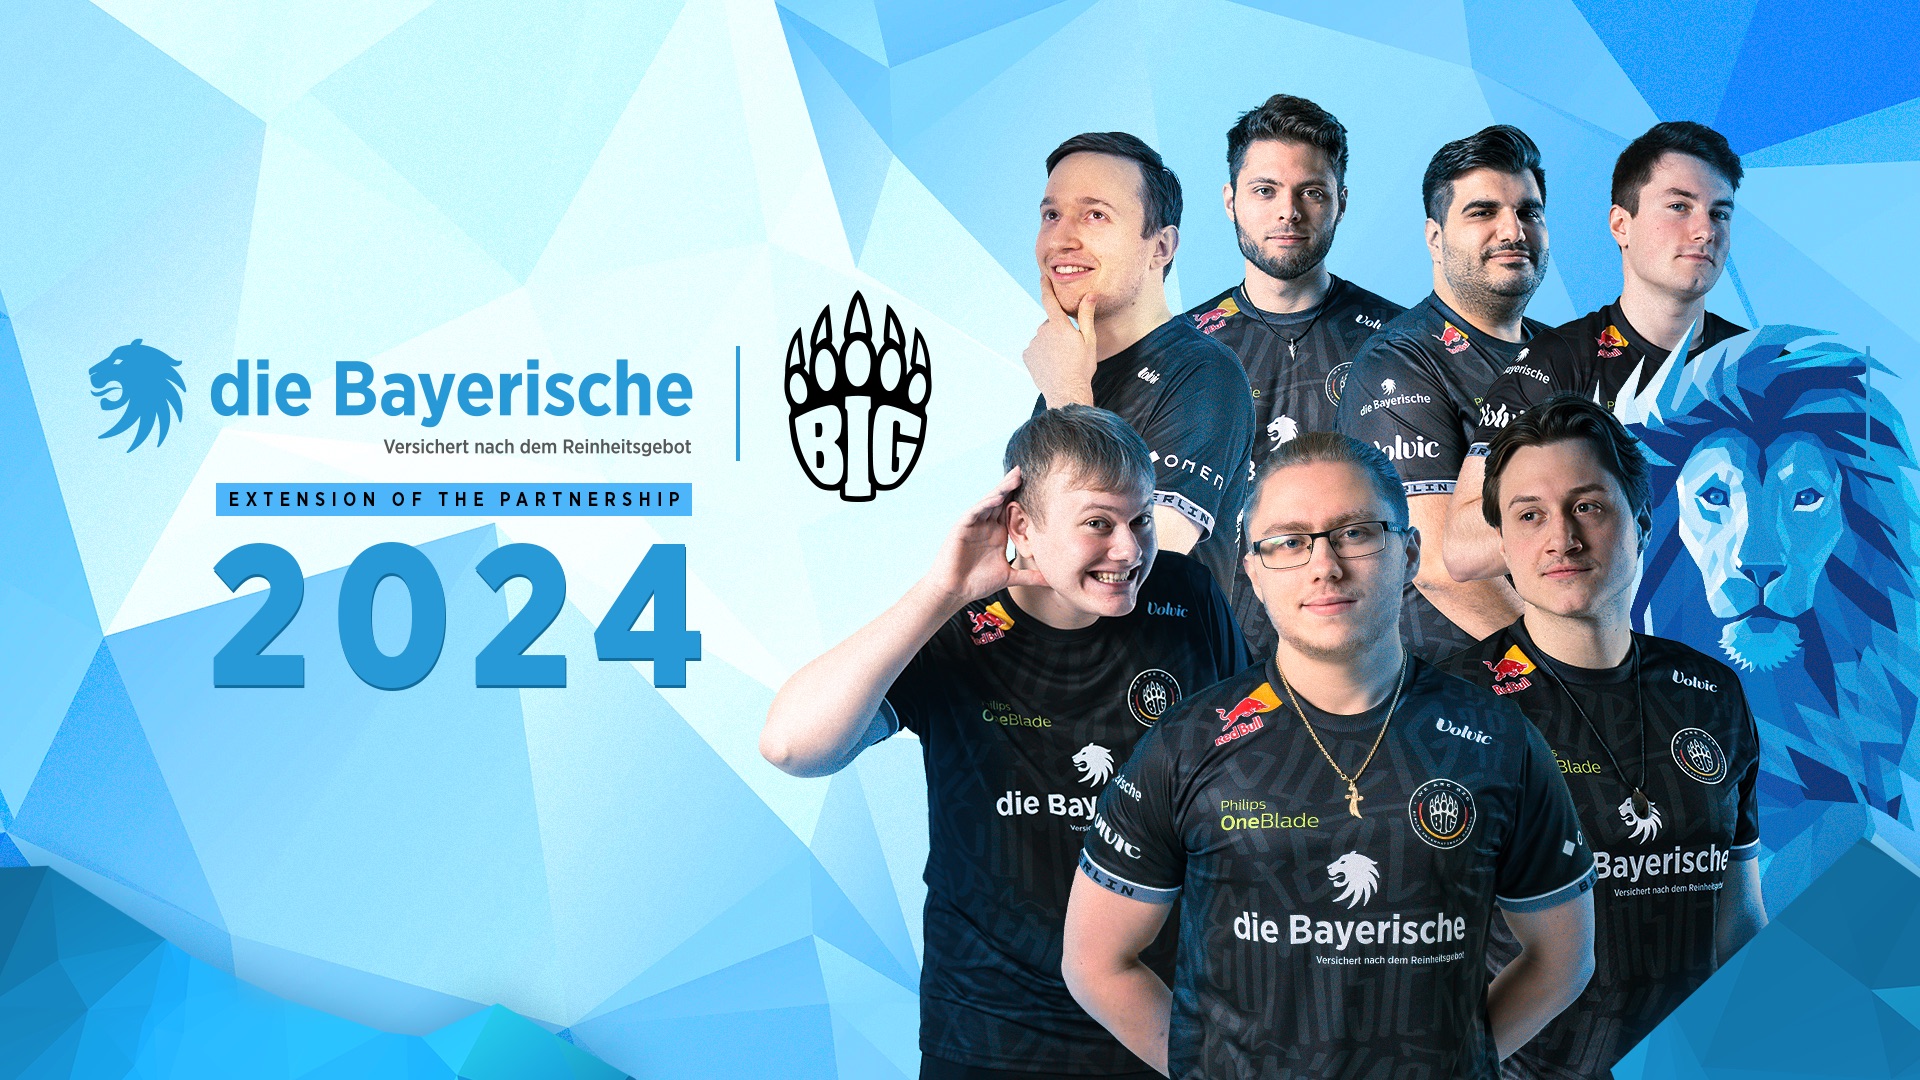 die-bayerische-extends-main-sponsorship-agreement-with-big